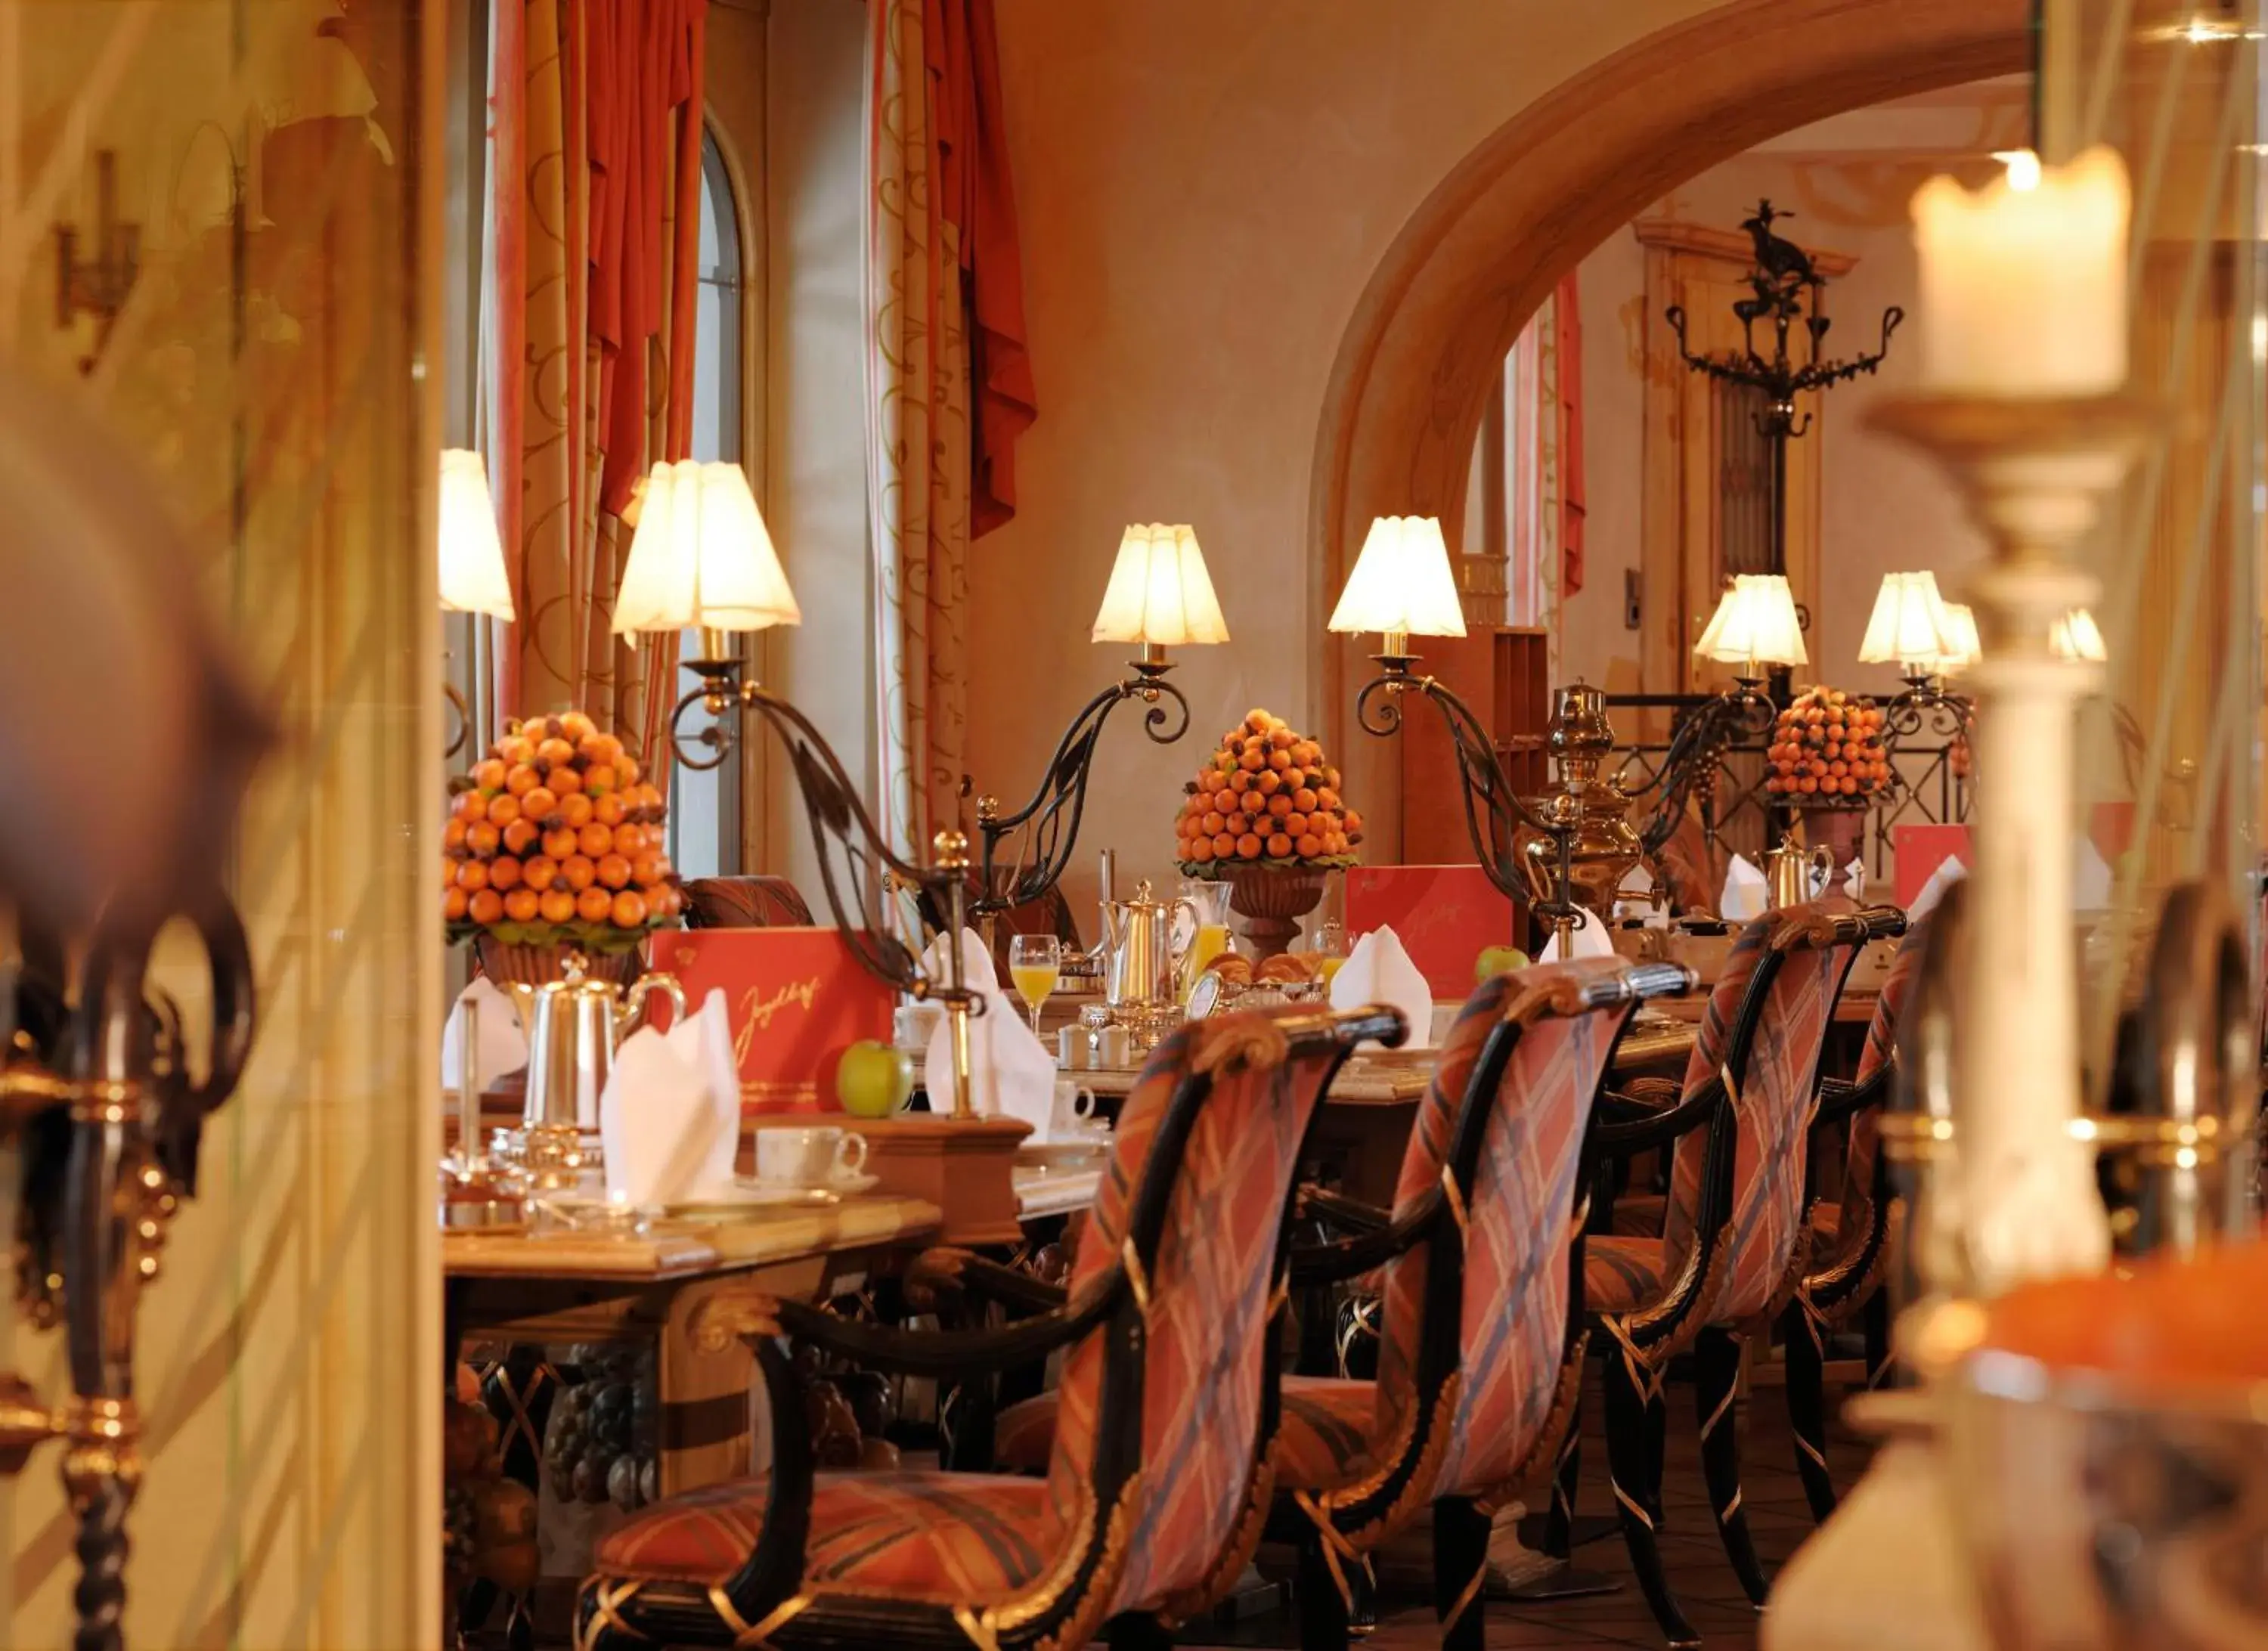 Banquet/Function facilities, Restaurant/Places to Eat in Relais & Châteaux Jagdhof Glashütte